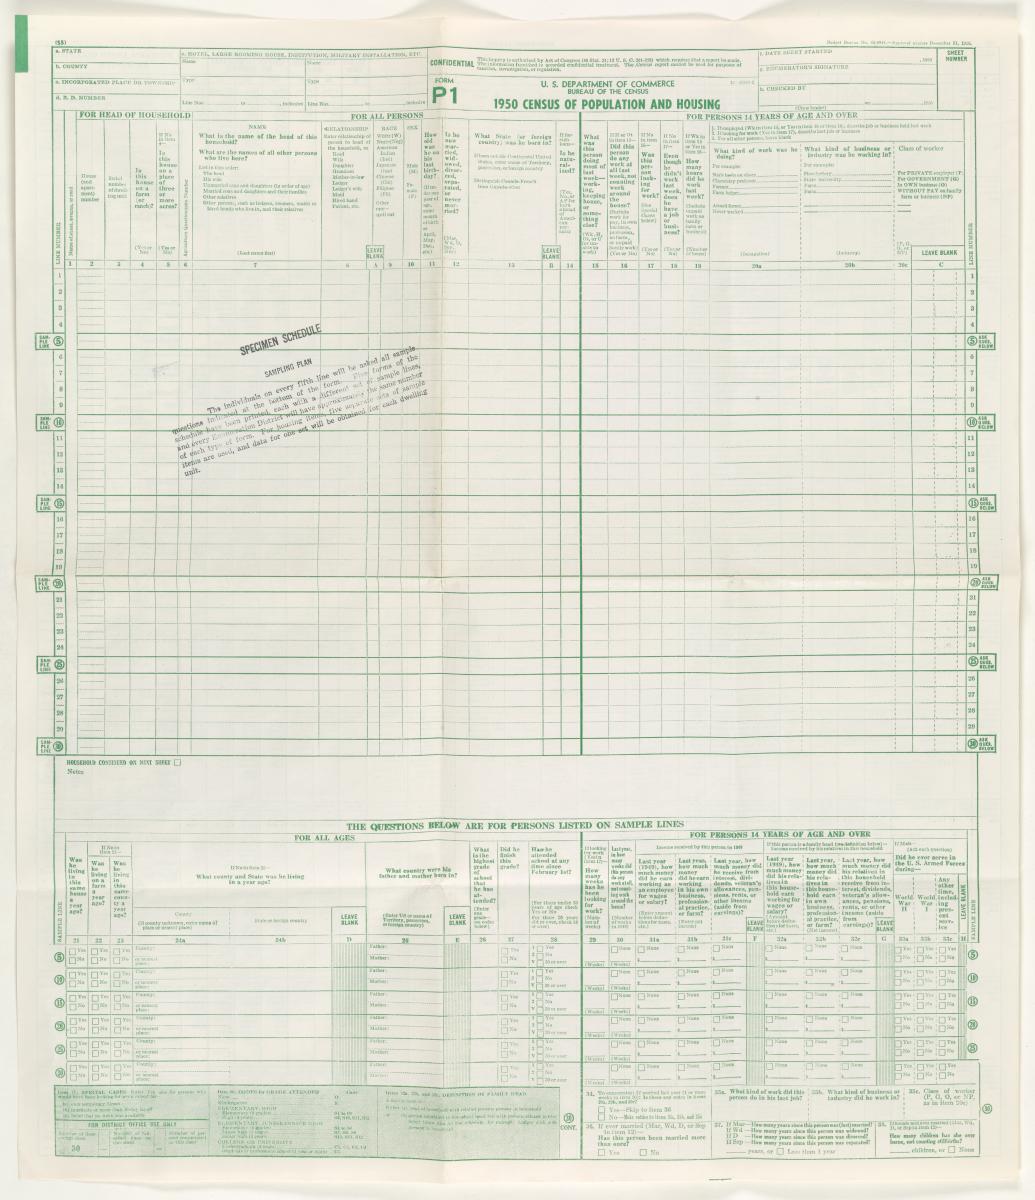 Census Form P1